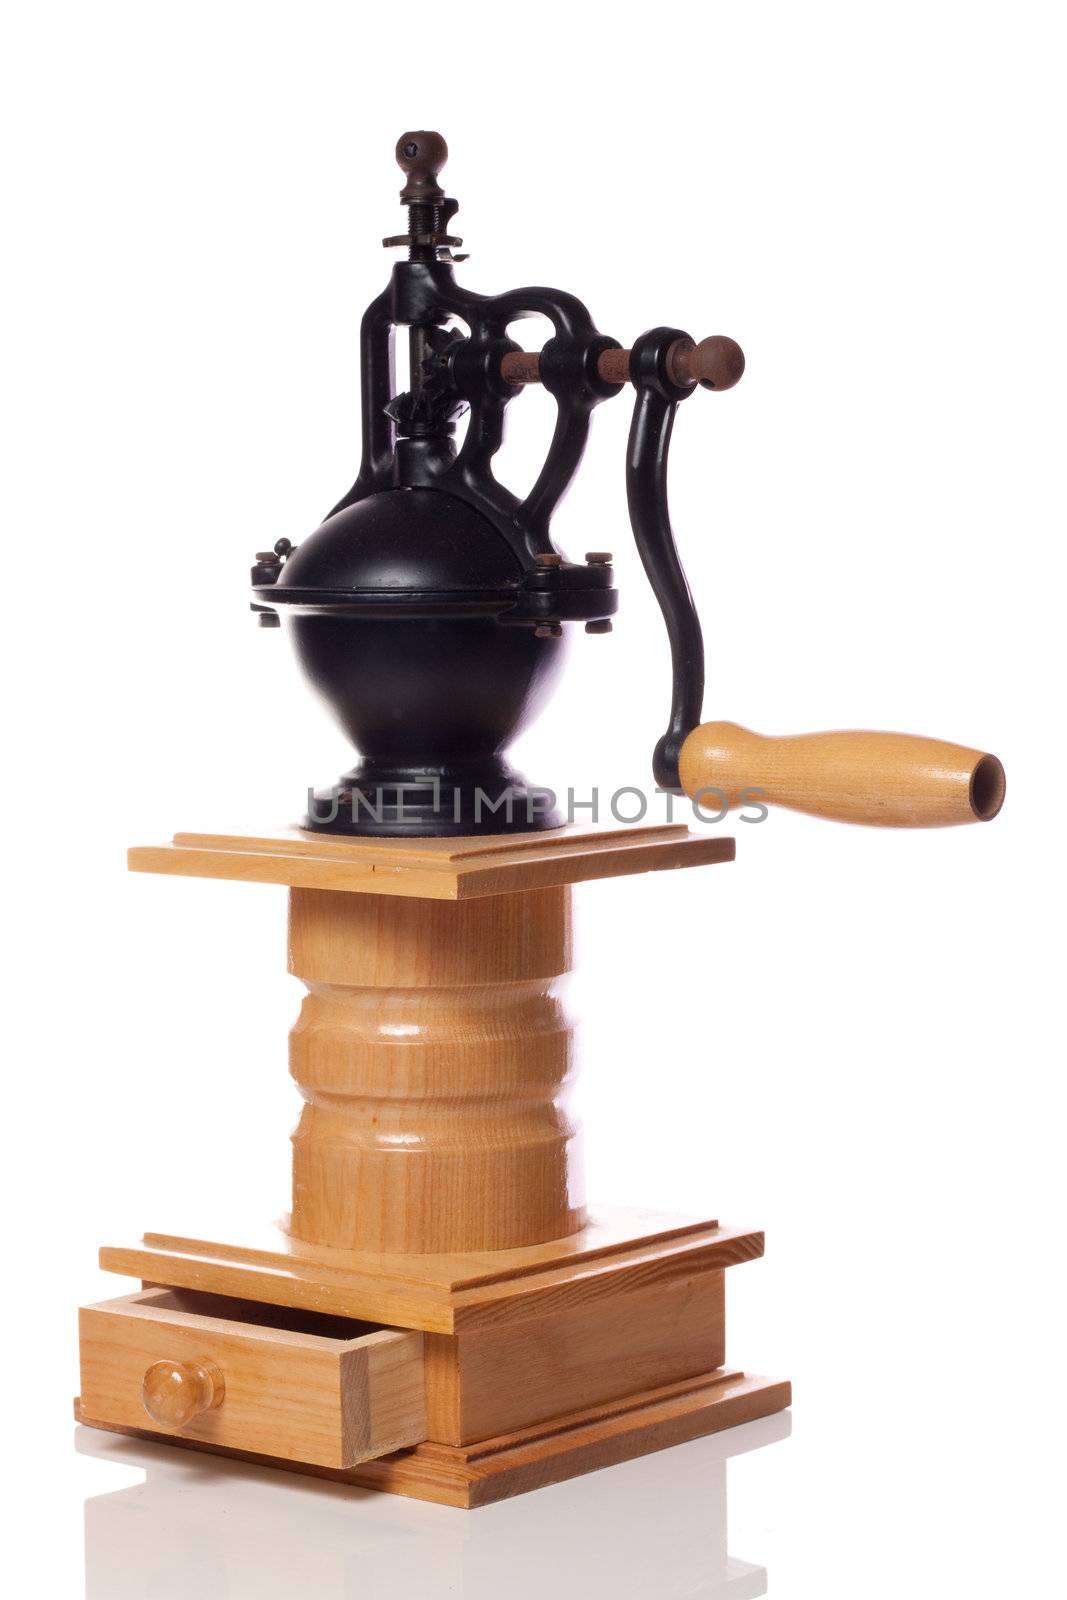 Very old manual coffee grinder